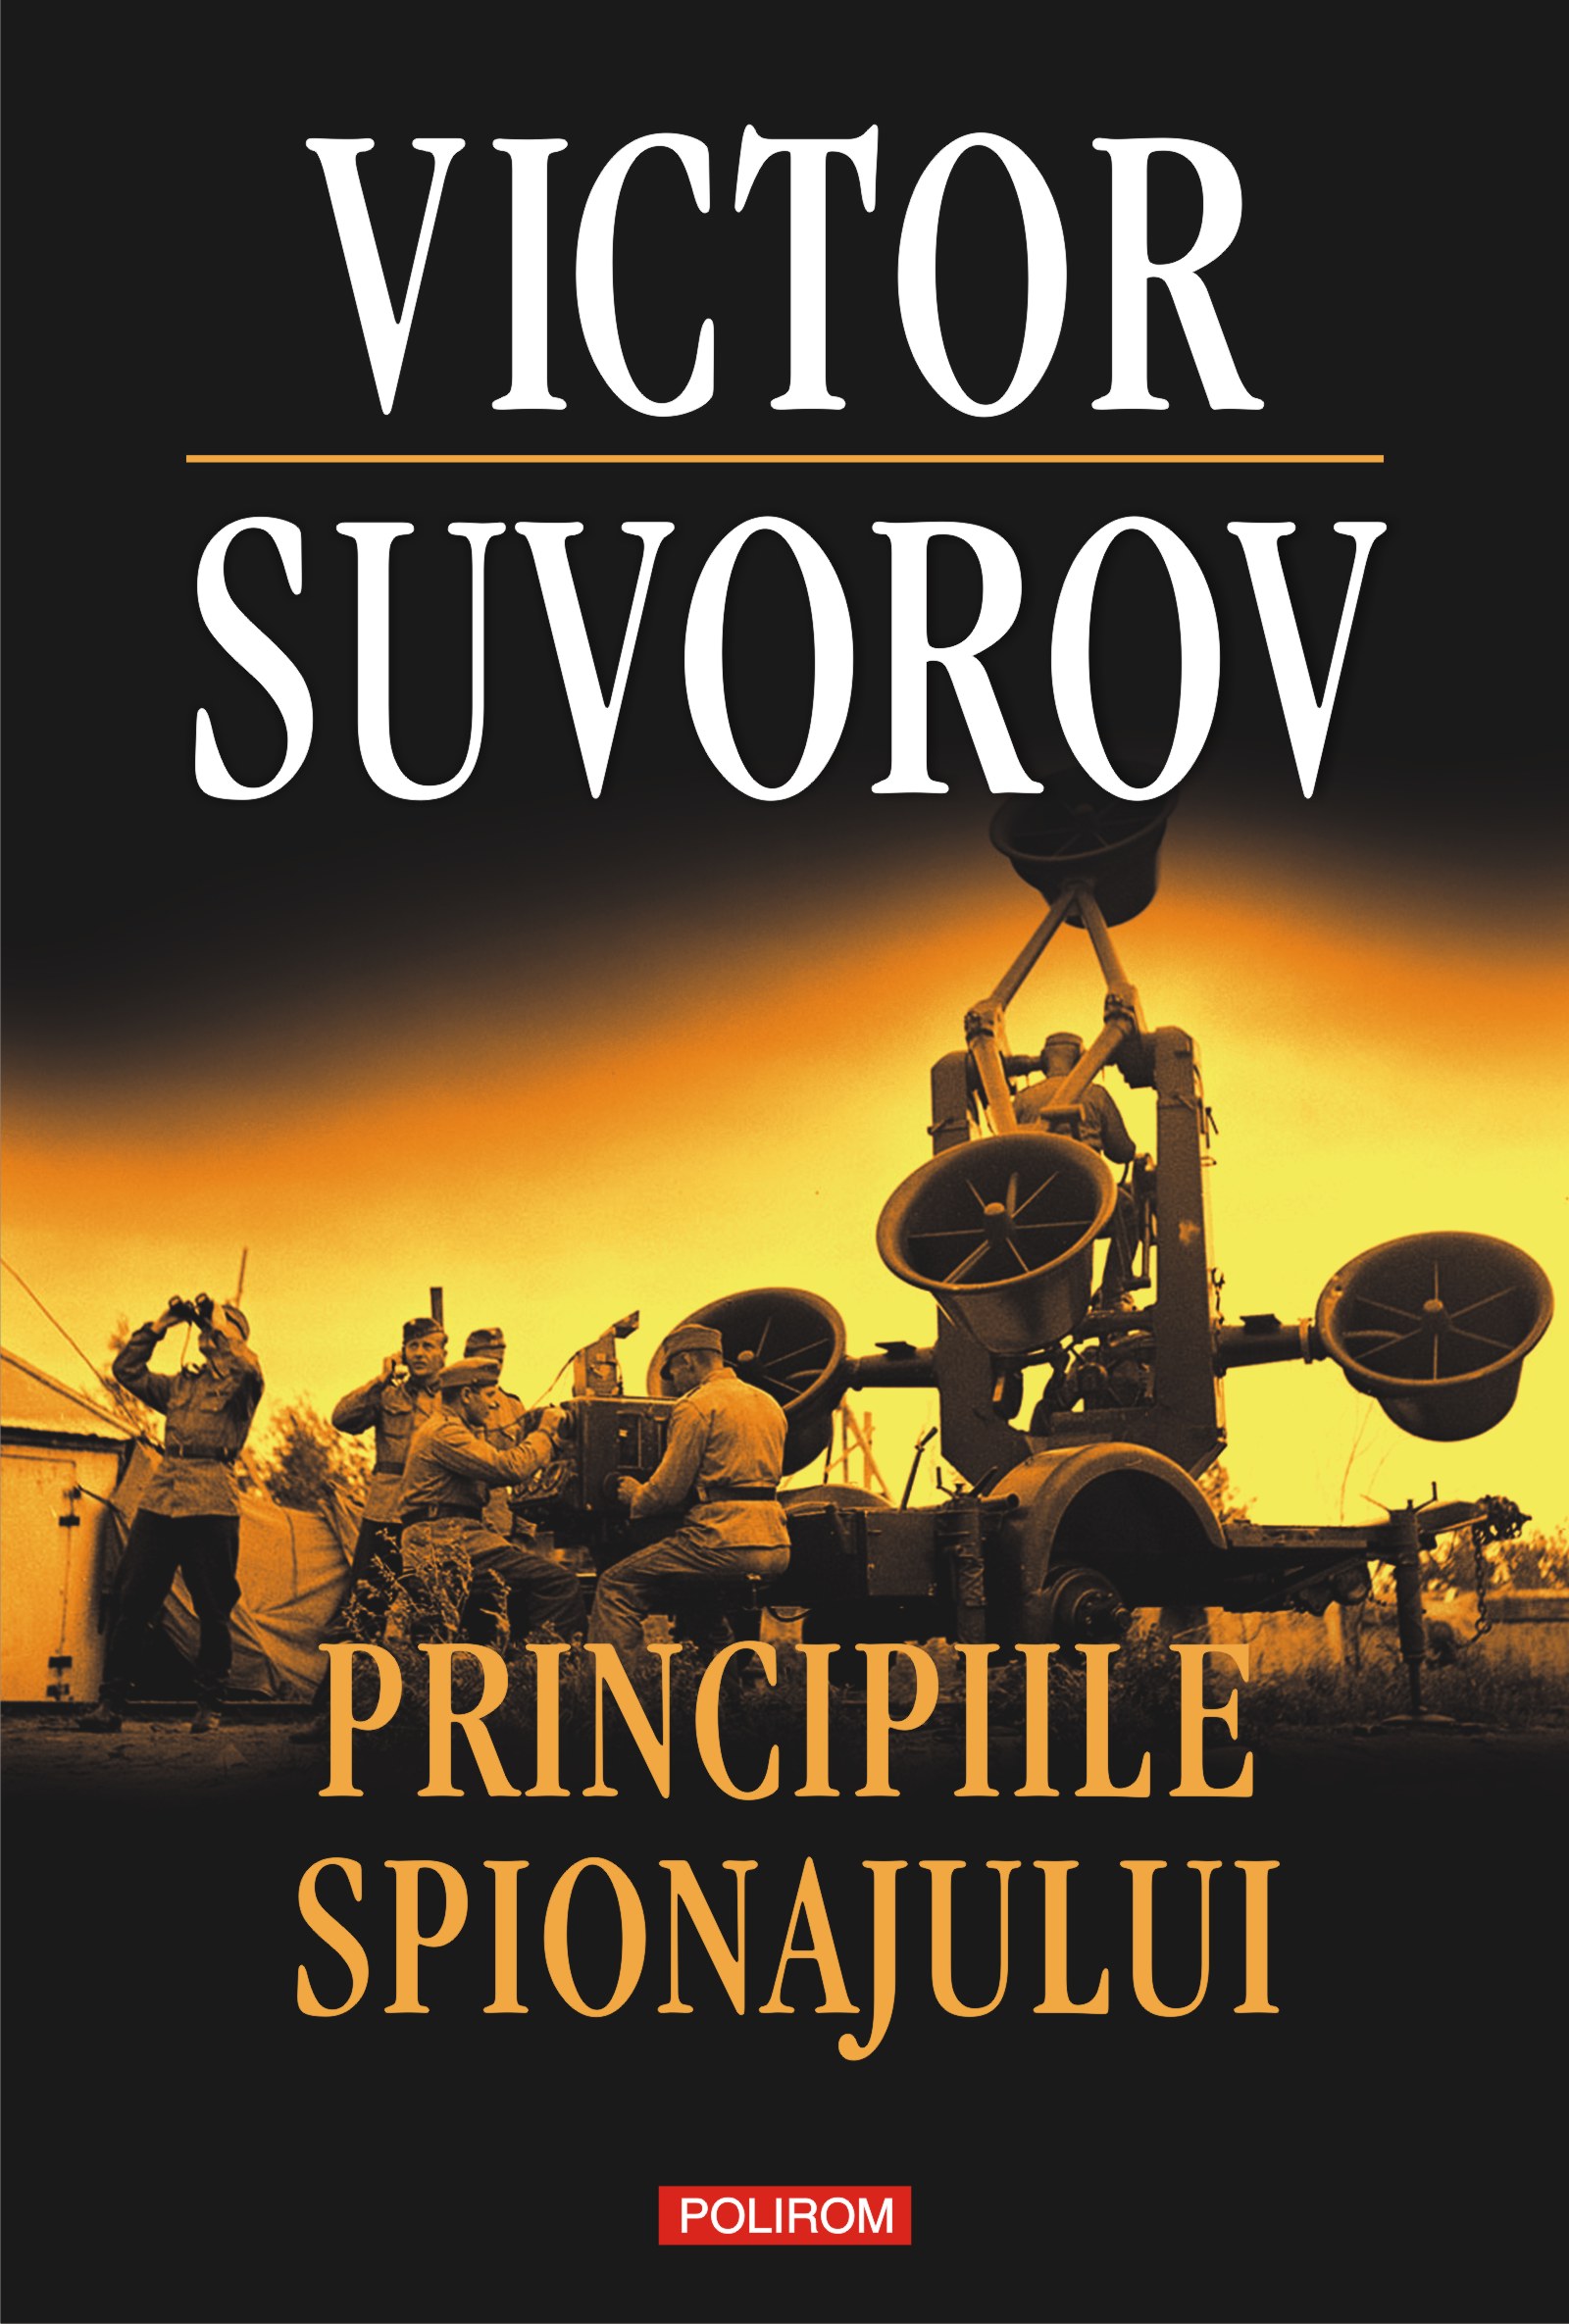 eBook Principiile spionajului. Cum functiona cea mai puternica si cea mai inchisa organizatie de spionaj a secolului XX - Victor Suvorov